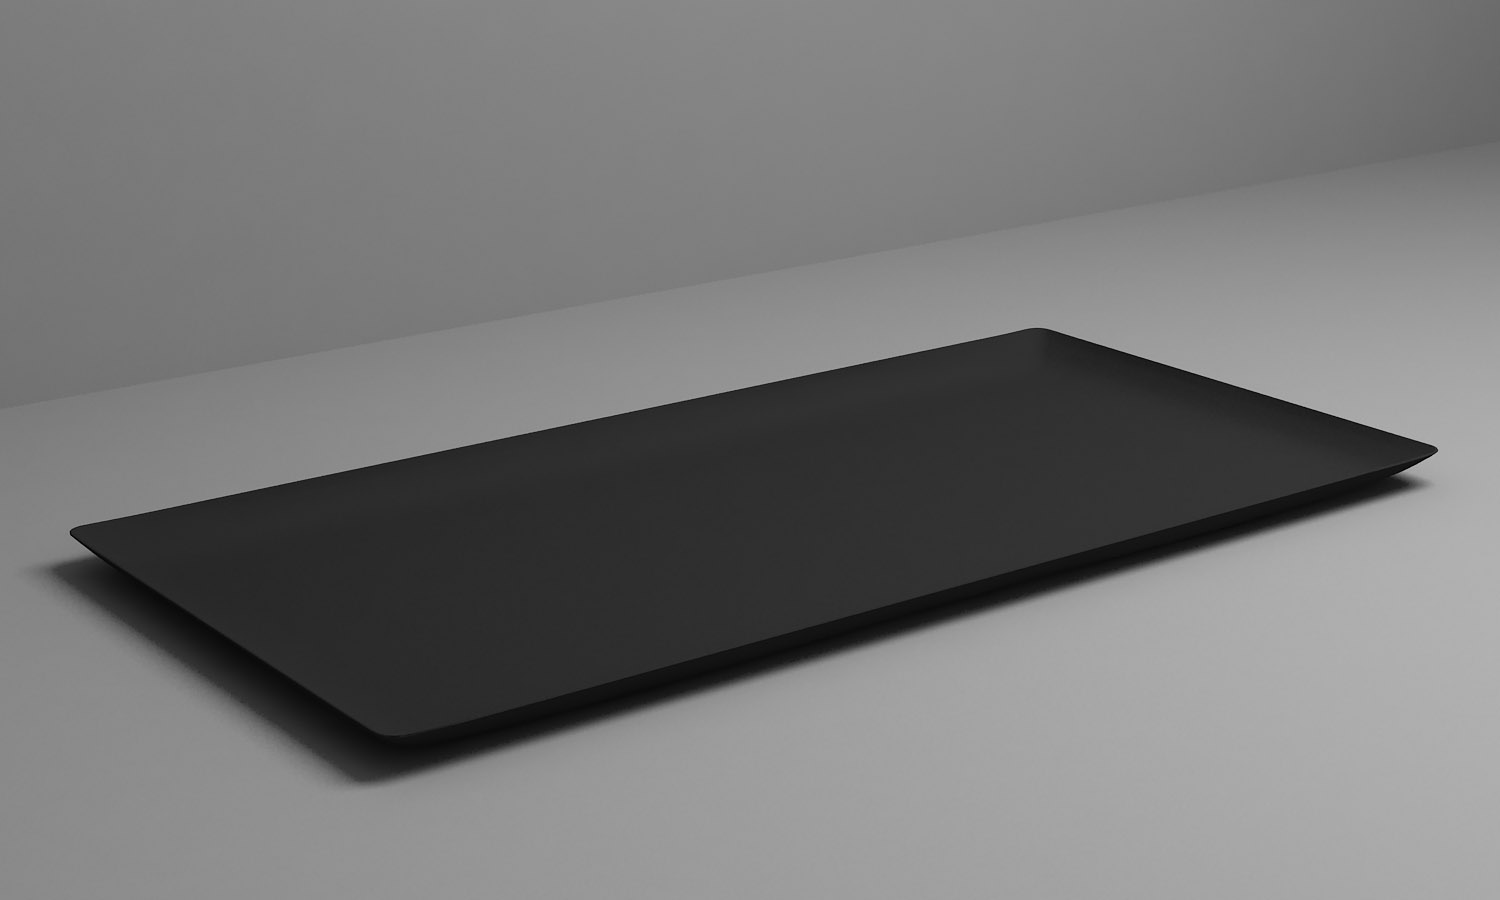 ARAVEN Tablett mit rechteckiger Form aus dem WAVE Catering-Sortiment, schwarz und aus Polystyrol